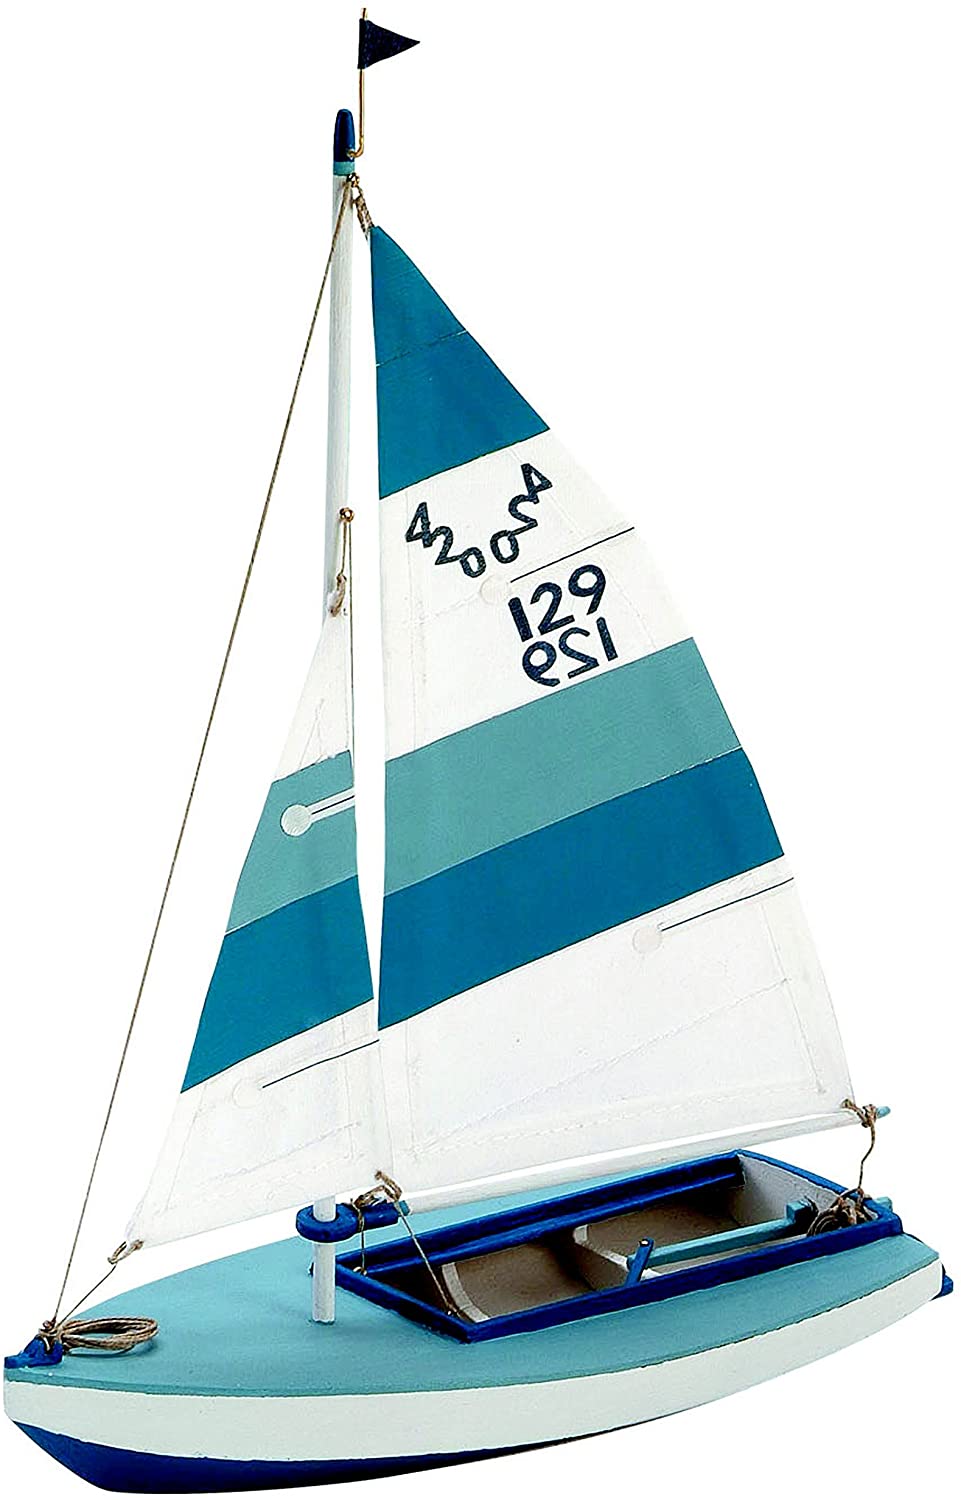 Maquette bois bateau Artesania 30501 Olympic 420